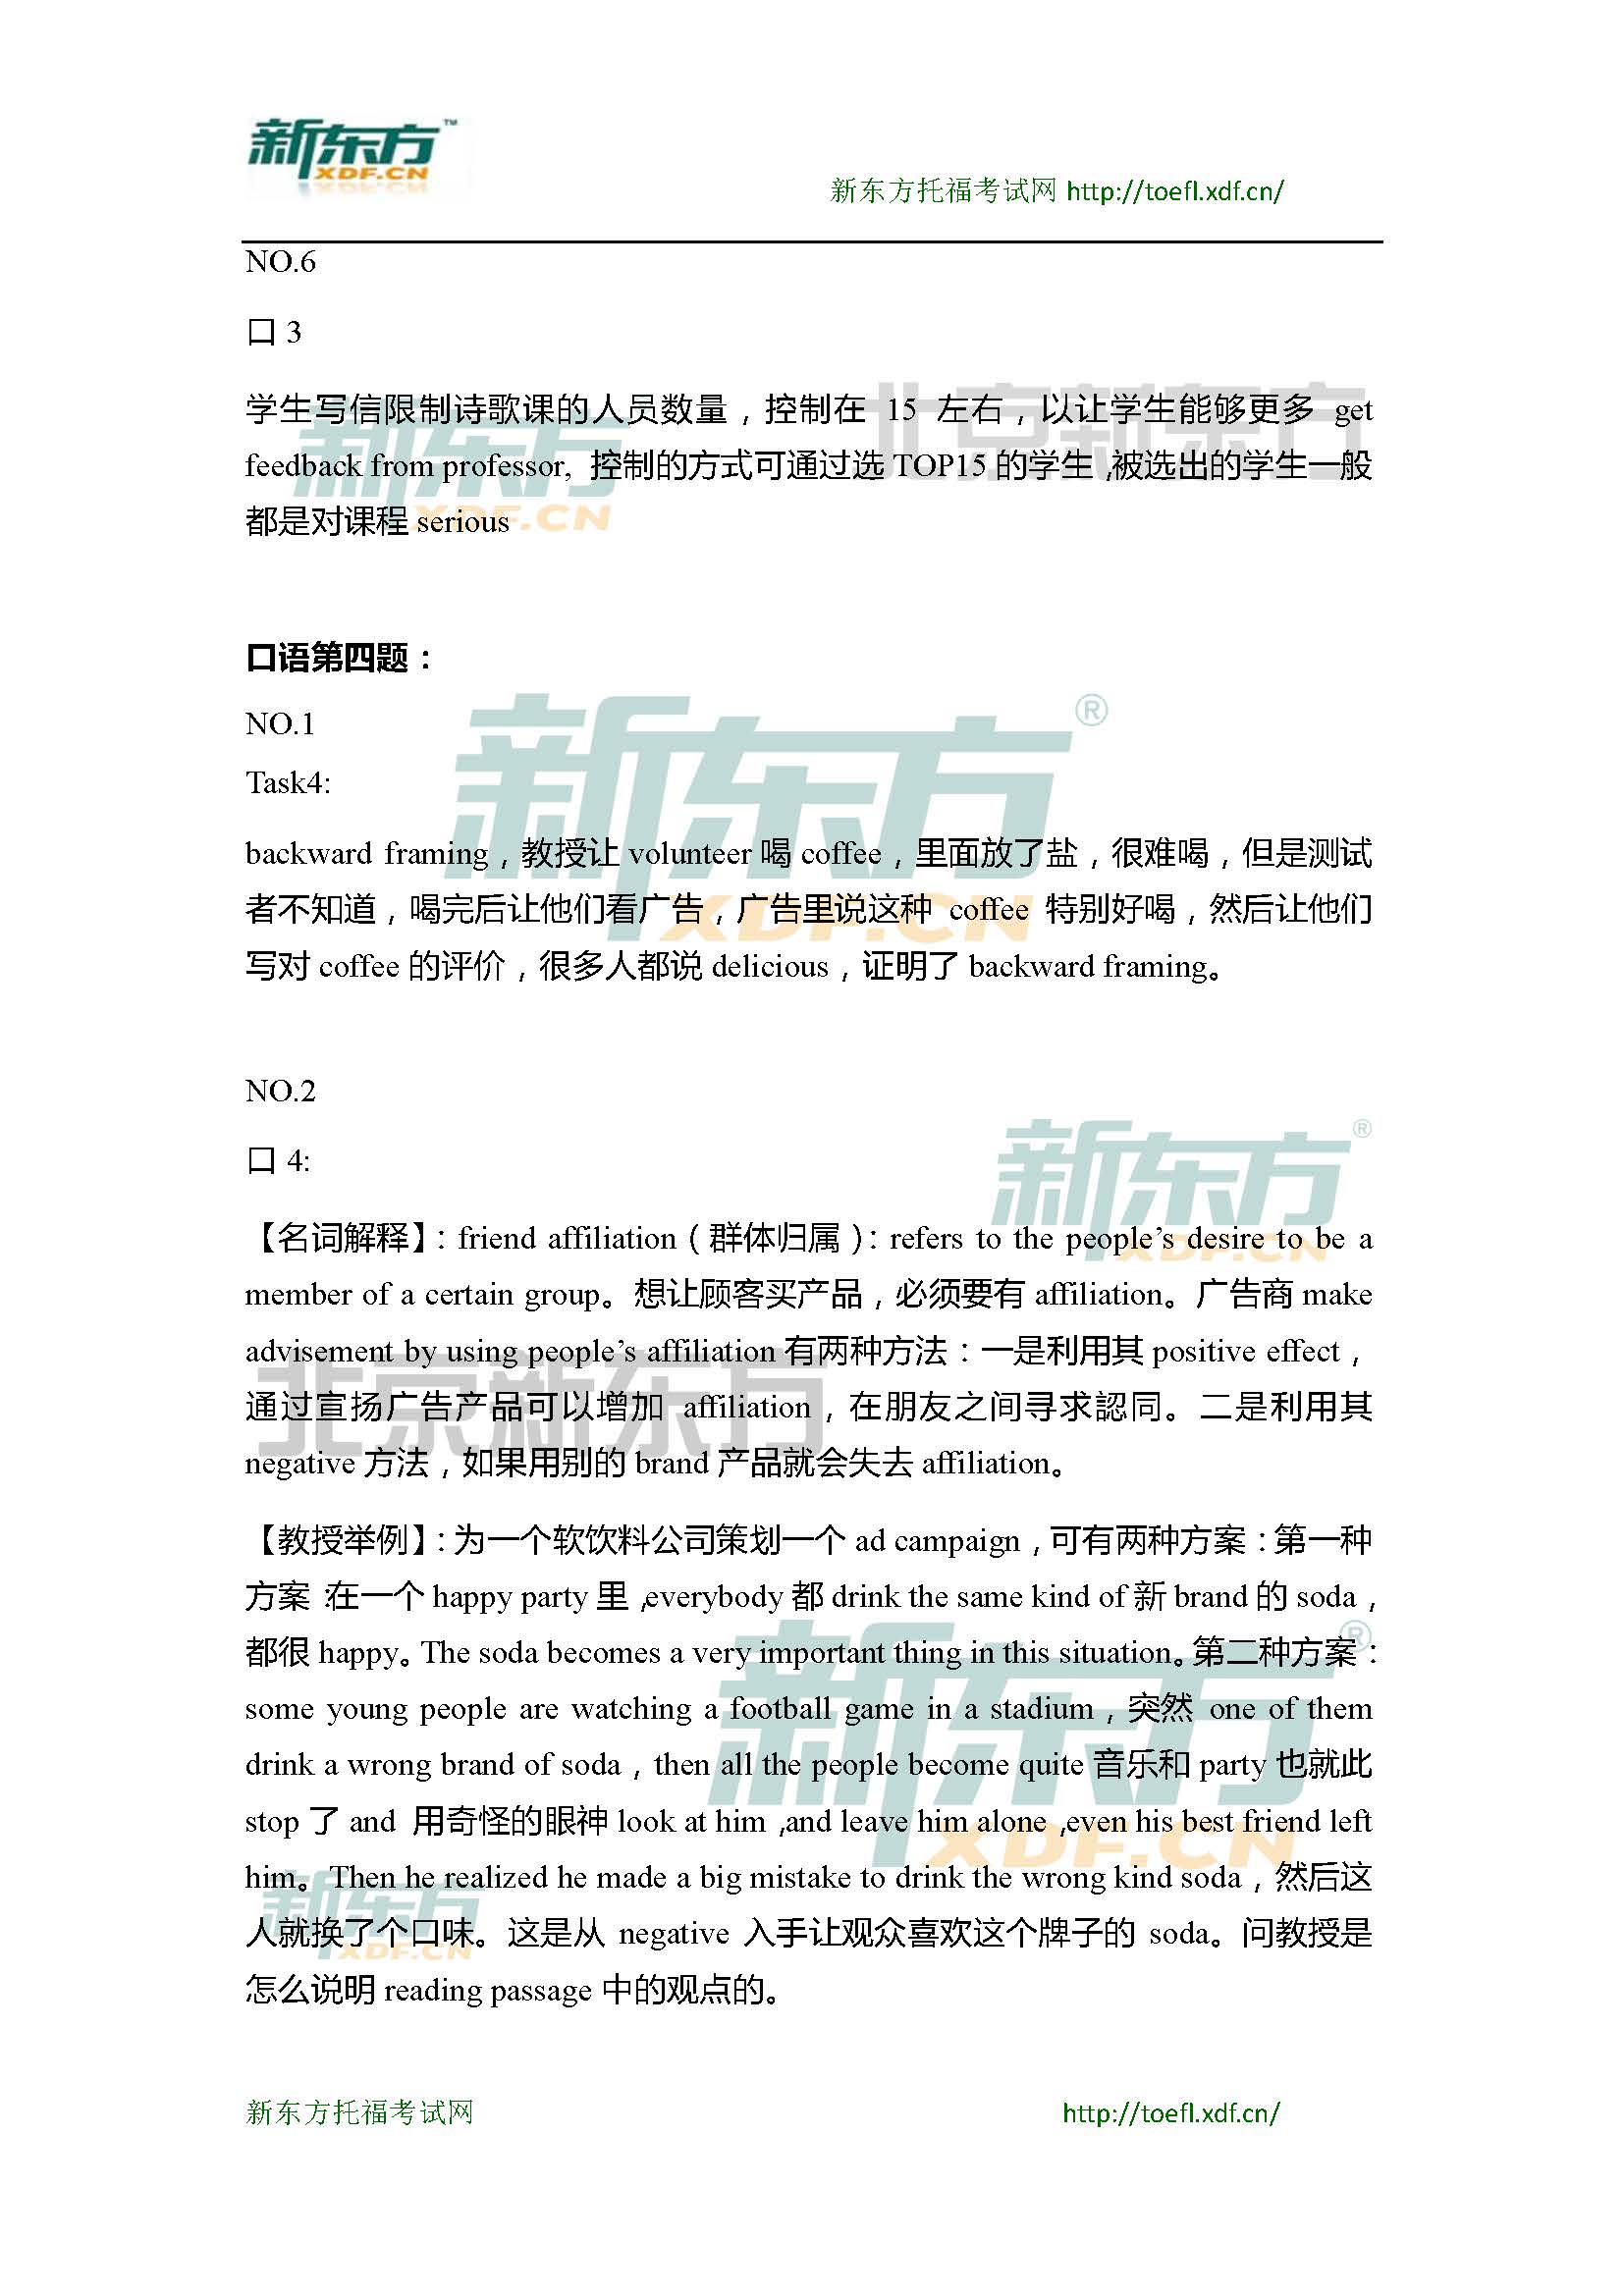 2015年4月18日托福口语超级小范围预测(6套题)